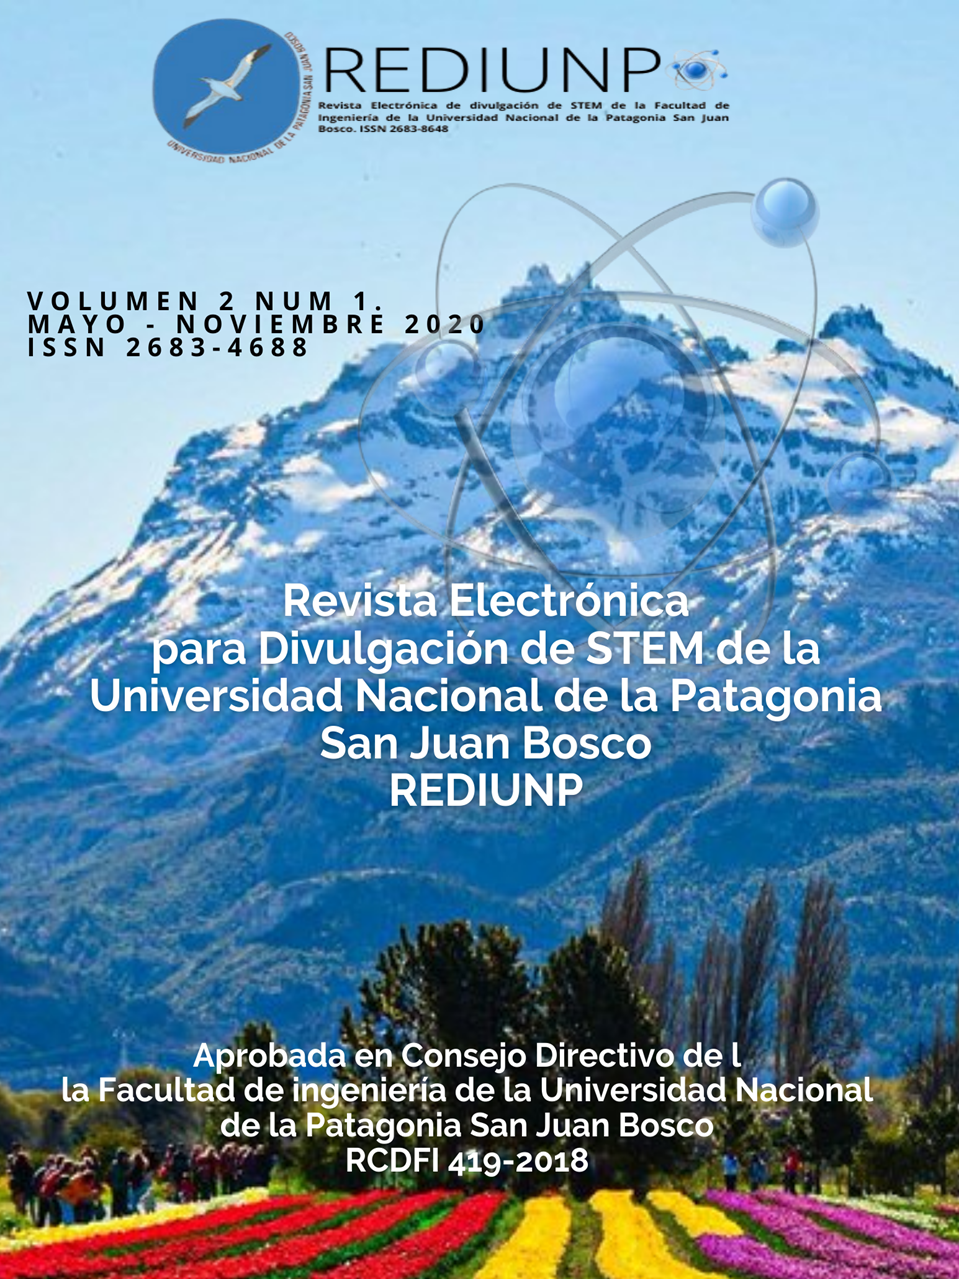 					Ver Vol. 2 Núm. 1 (2020): Revista Electrónica de divulgación de STEM de la Facultad de Ingeniería de la Universidad Nacional de la Patagonia San Juan Bosco.
				